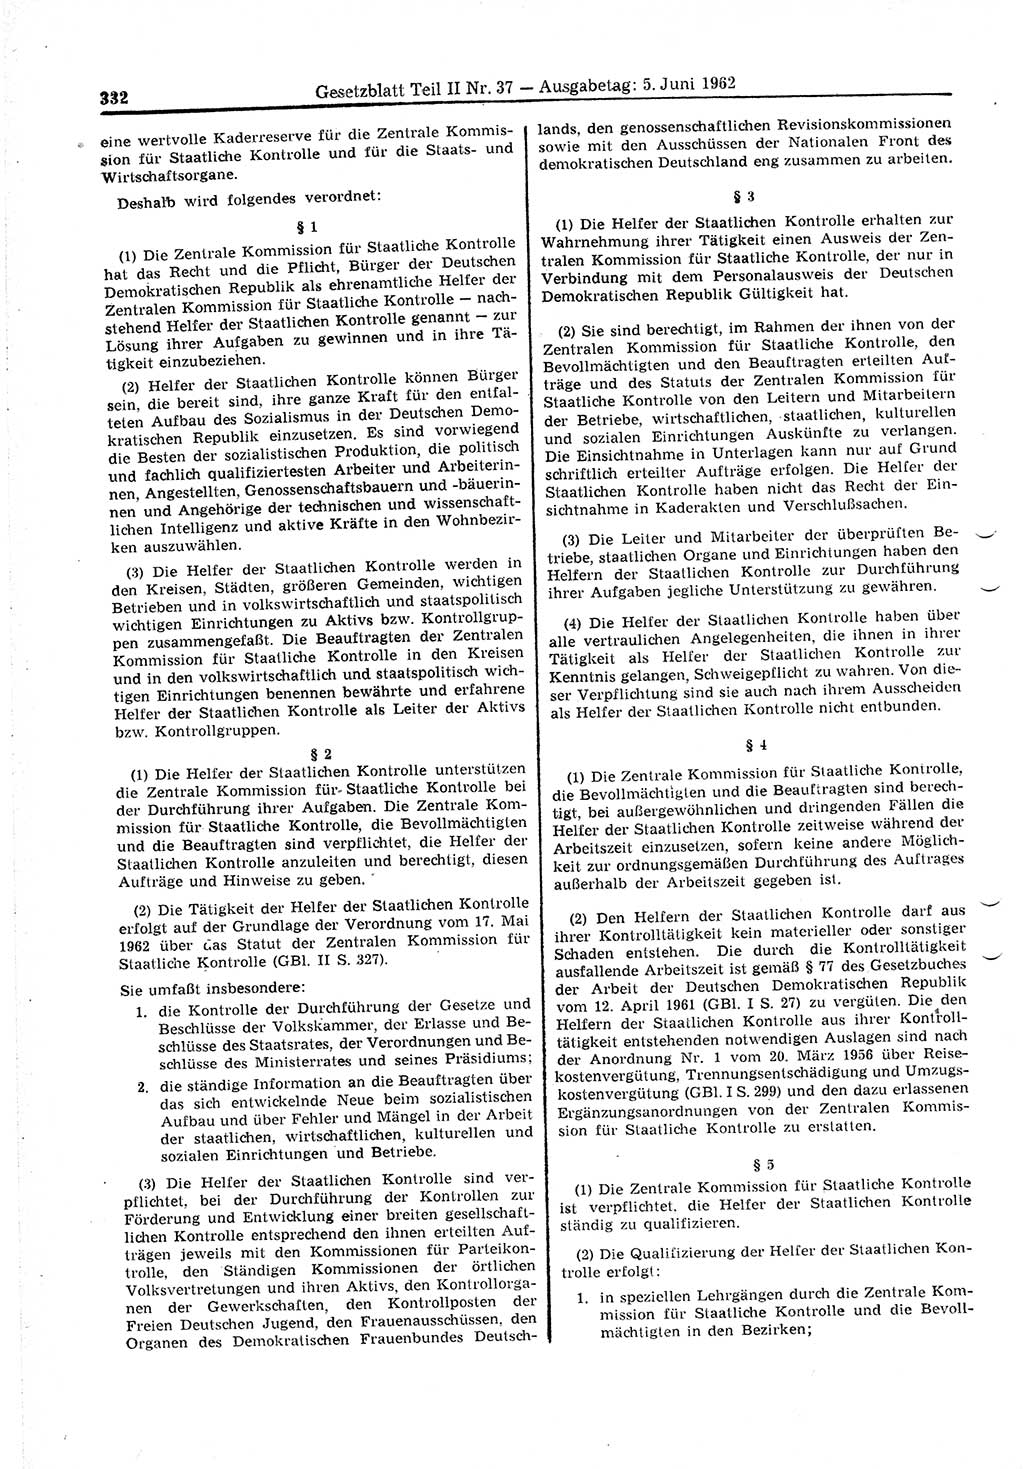 Gesetzblatt (GBl.) der Deutschen Demokratischen Republik (DDR) Teil ⅠⅠ 1962, Seite 332 (GBl. DDR ⅠⅠ 1962, S. 332)